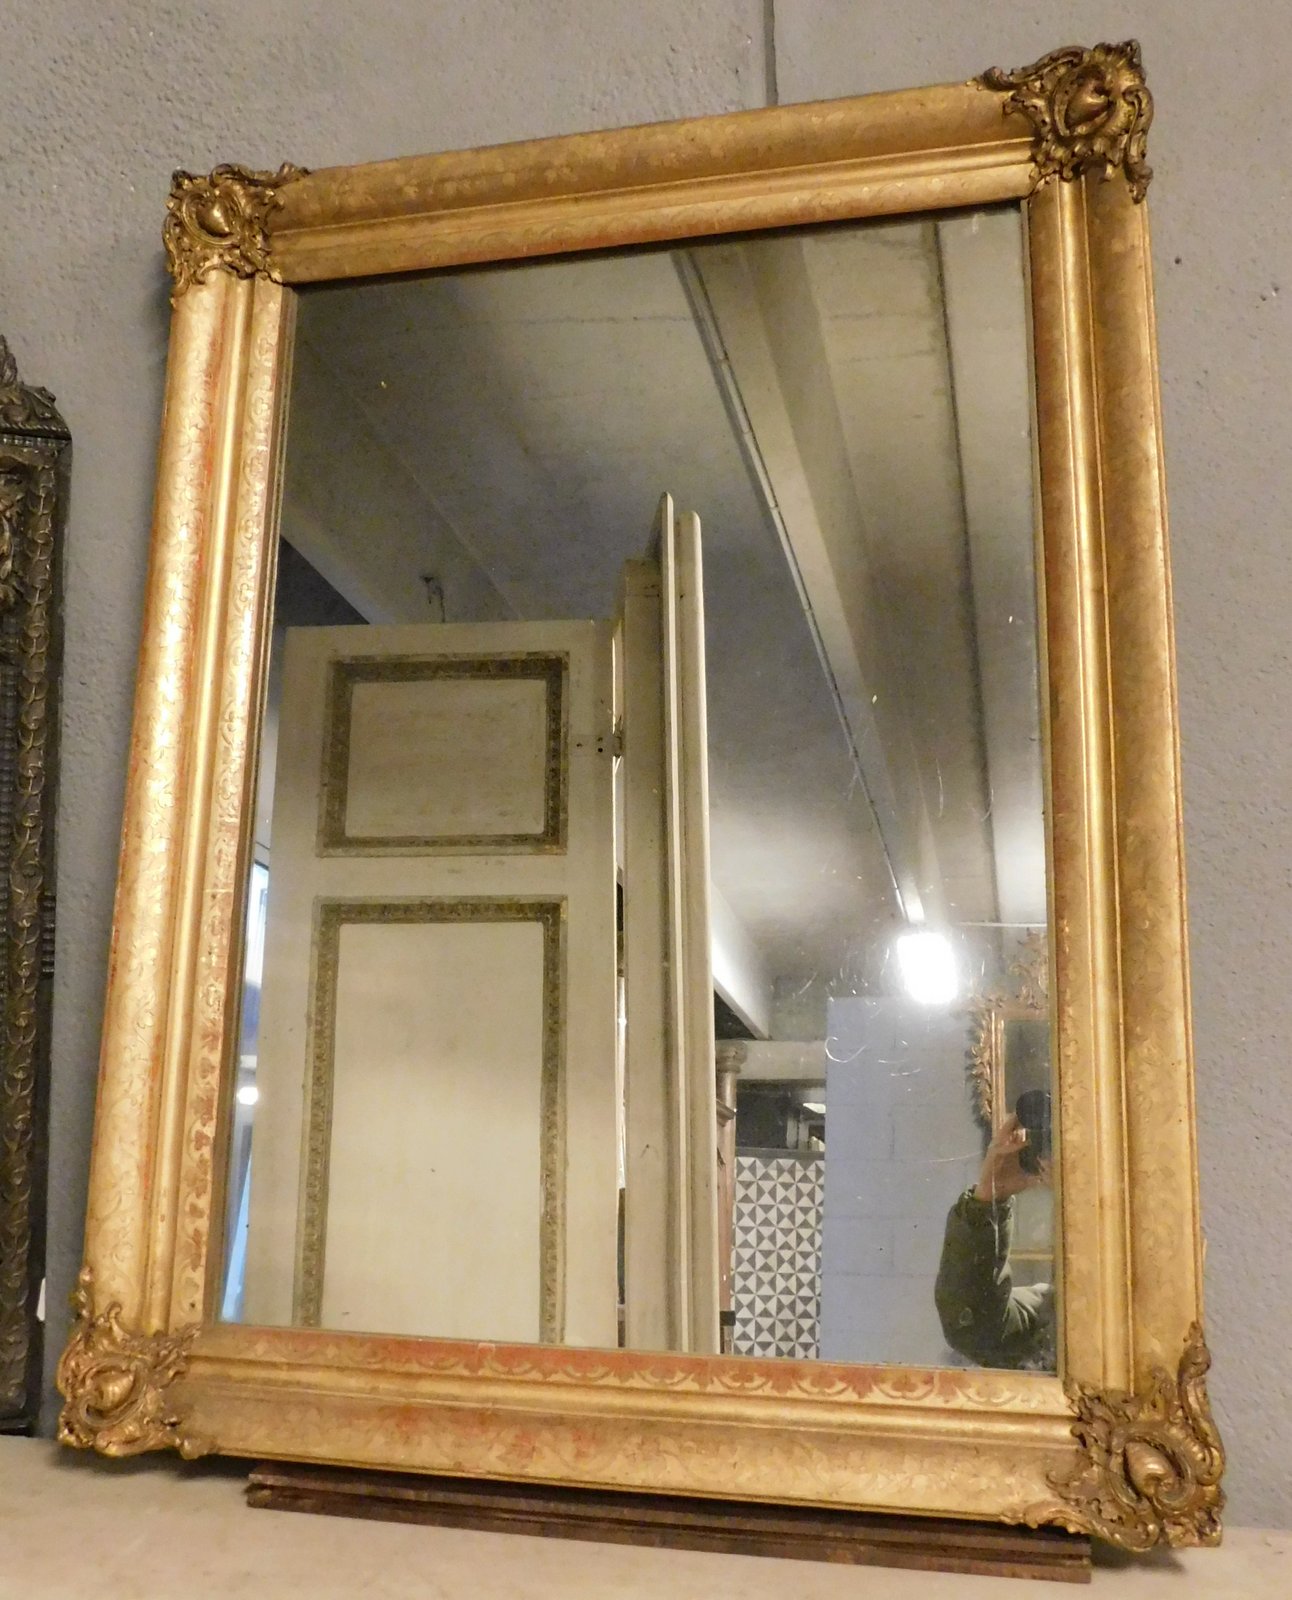 specc292 - specchiera dorata e scolpita, XIX secolo, misura cm l 65 x h 110